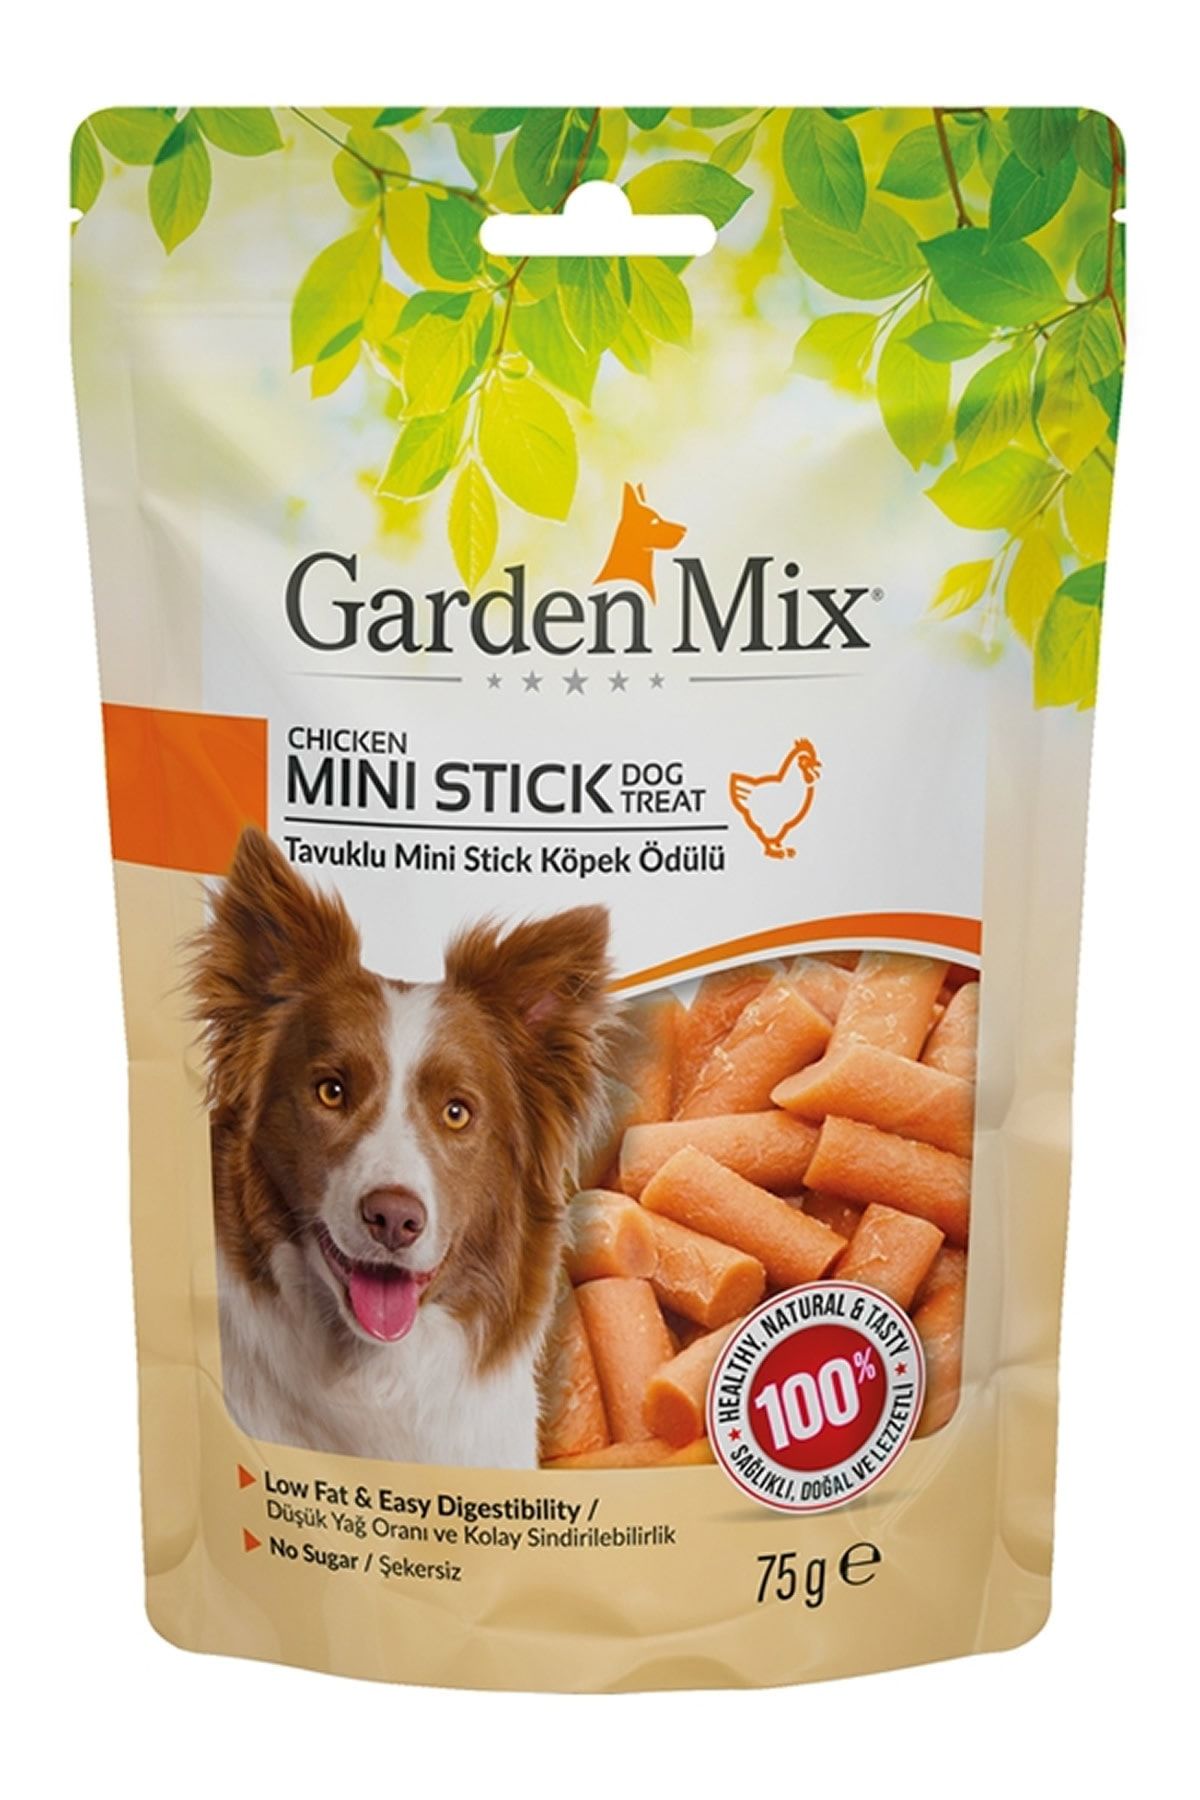 Gardenmix Garden Mıx Tavuklu Mini Stick Köpek Ödülü 75 Gr